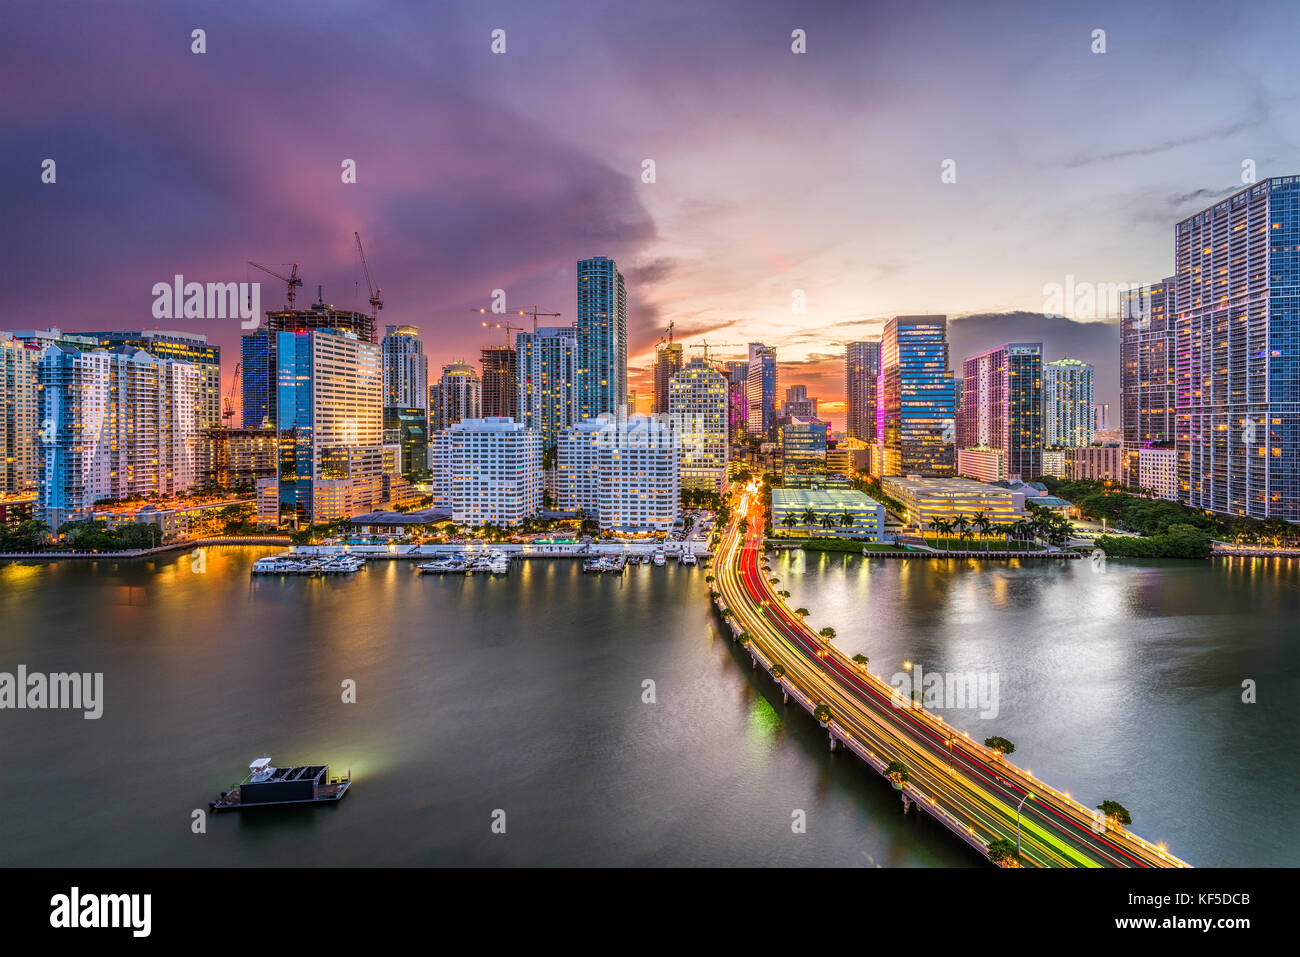 Miami, Florida, USA downtown city skyline. Stock Photo